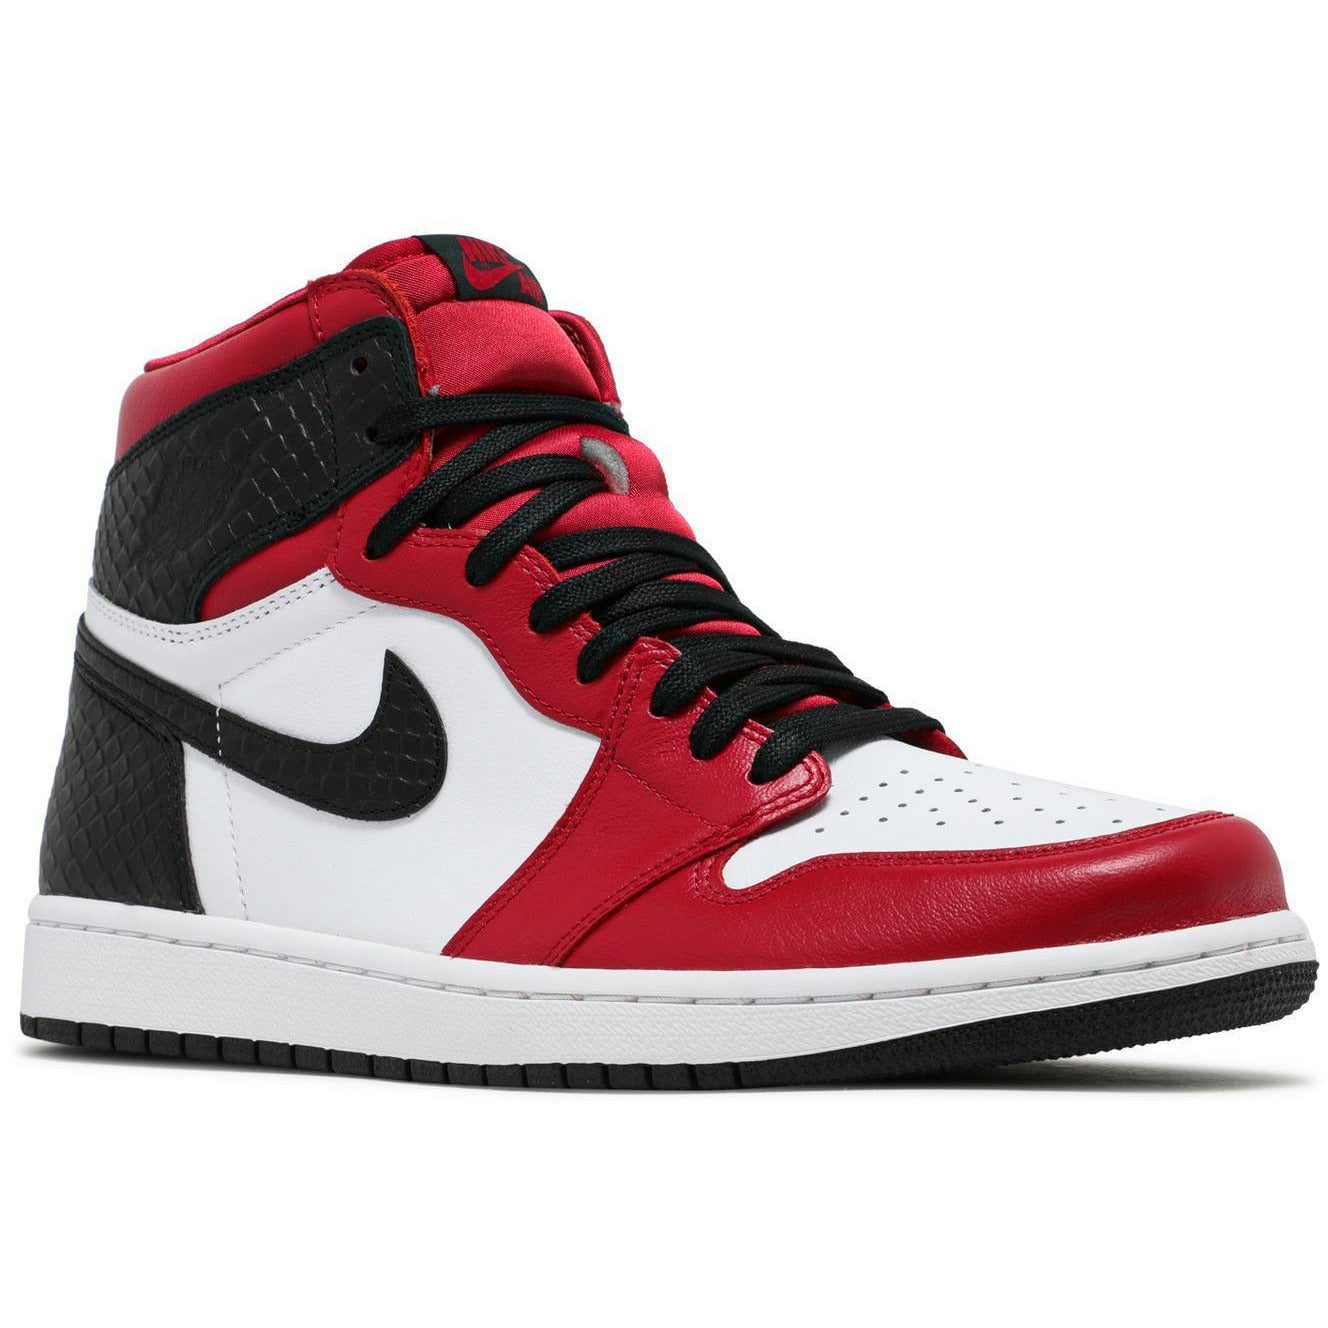 Wmns Air Jordan 1 Retro High OG Satin Red (2020) - mrsneaker